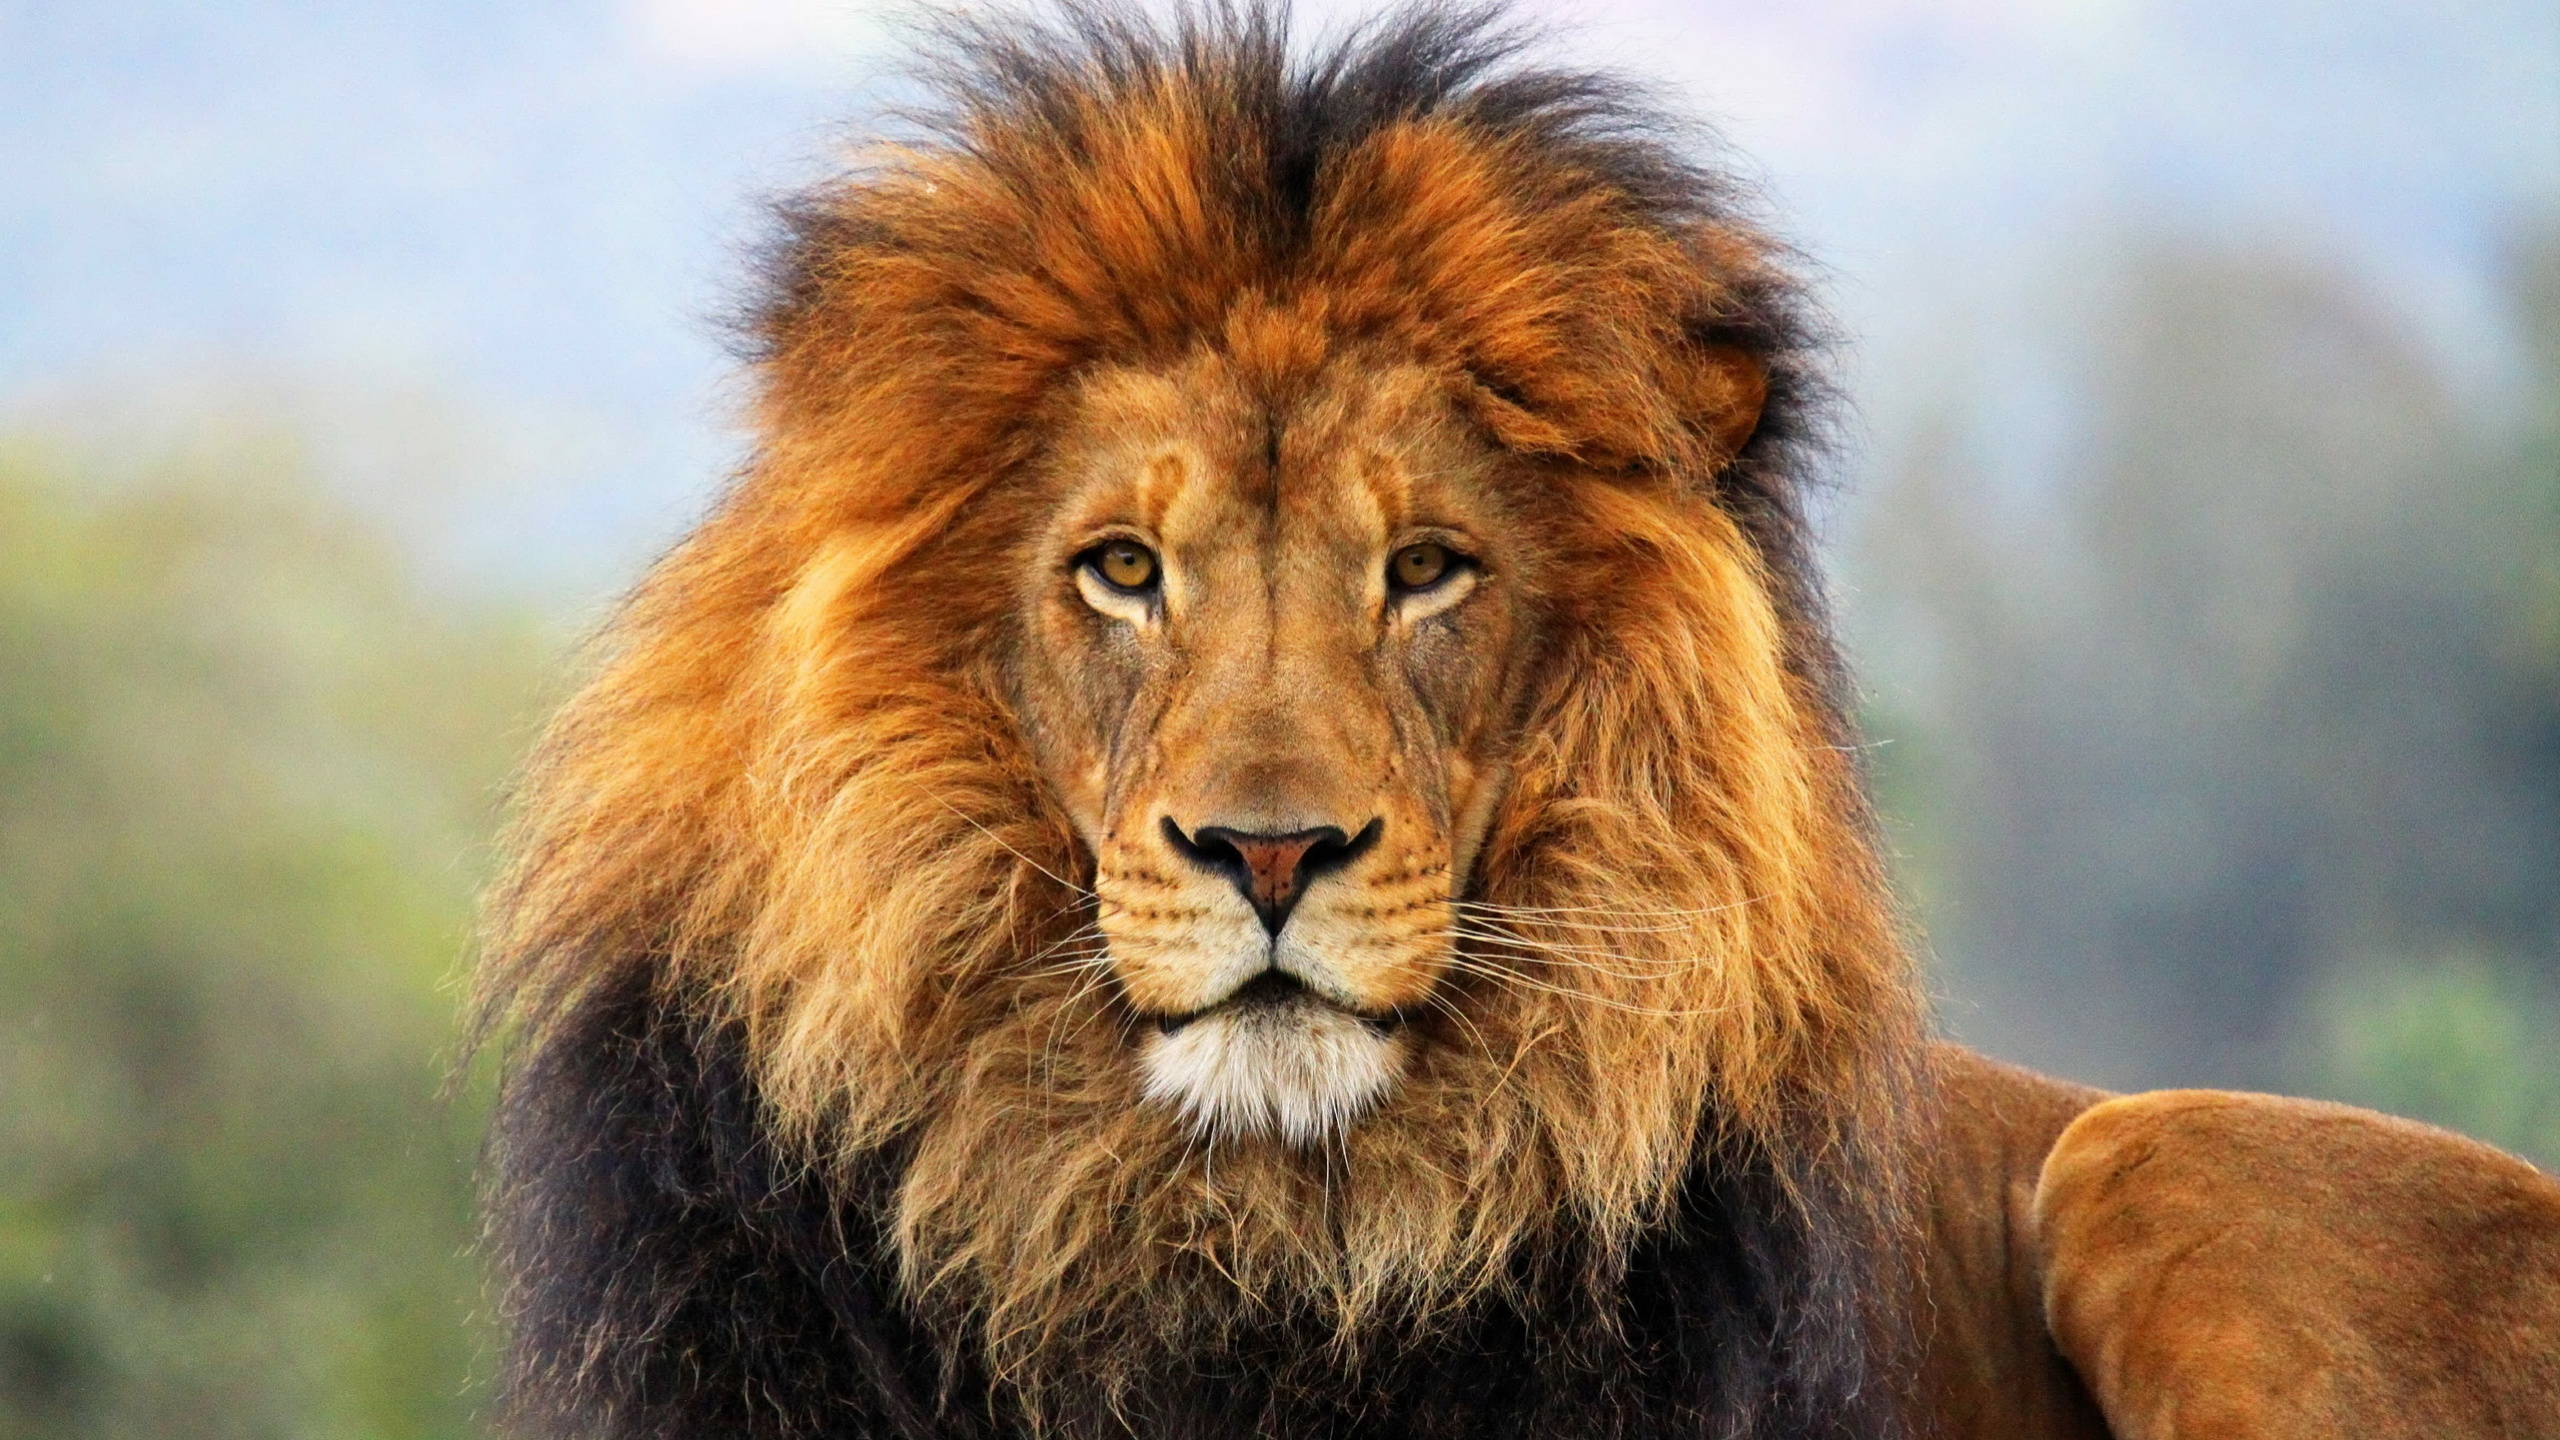 狮子, 野生动物, 马赛马的狮子, 陆地动物, 鬃毛 壁纸 2560x1440 允许